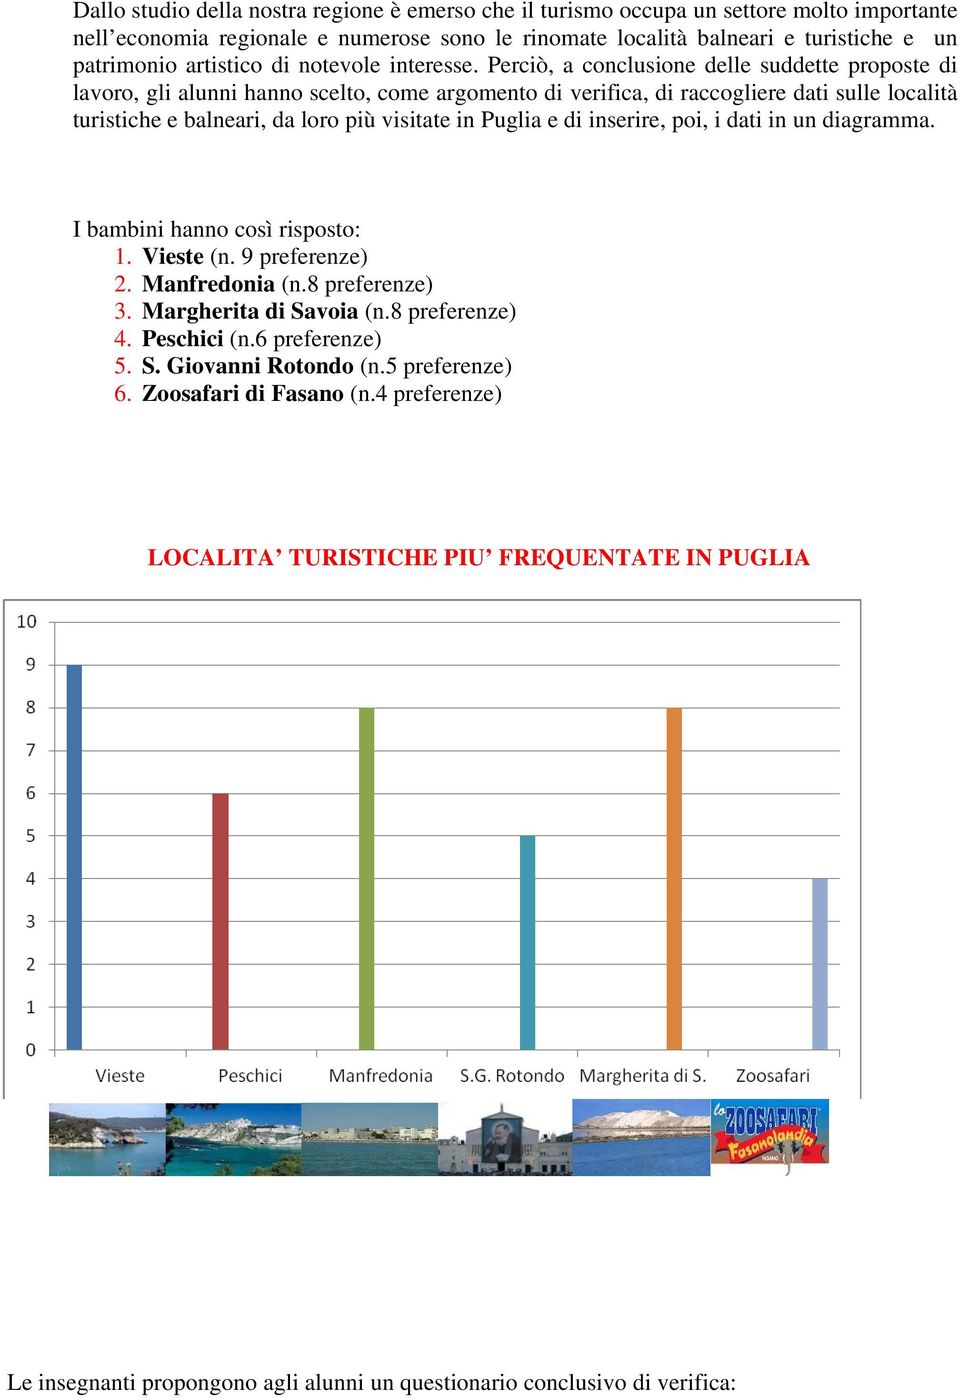 Perciò, a conclusione delle suddette proposte di lavoro, gli alunni hanno scelto, come argomento di verifica, di raccogliere dati sulle località turistiche e balneari, da loro più visitate in Puglia